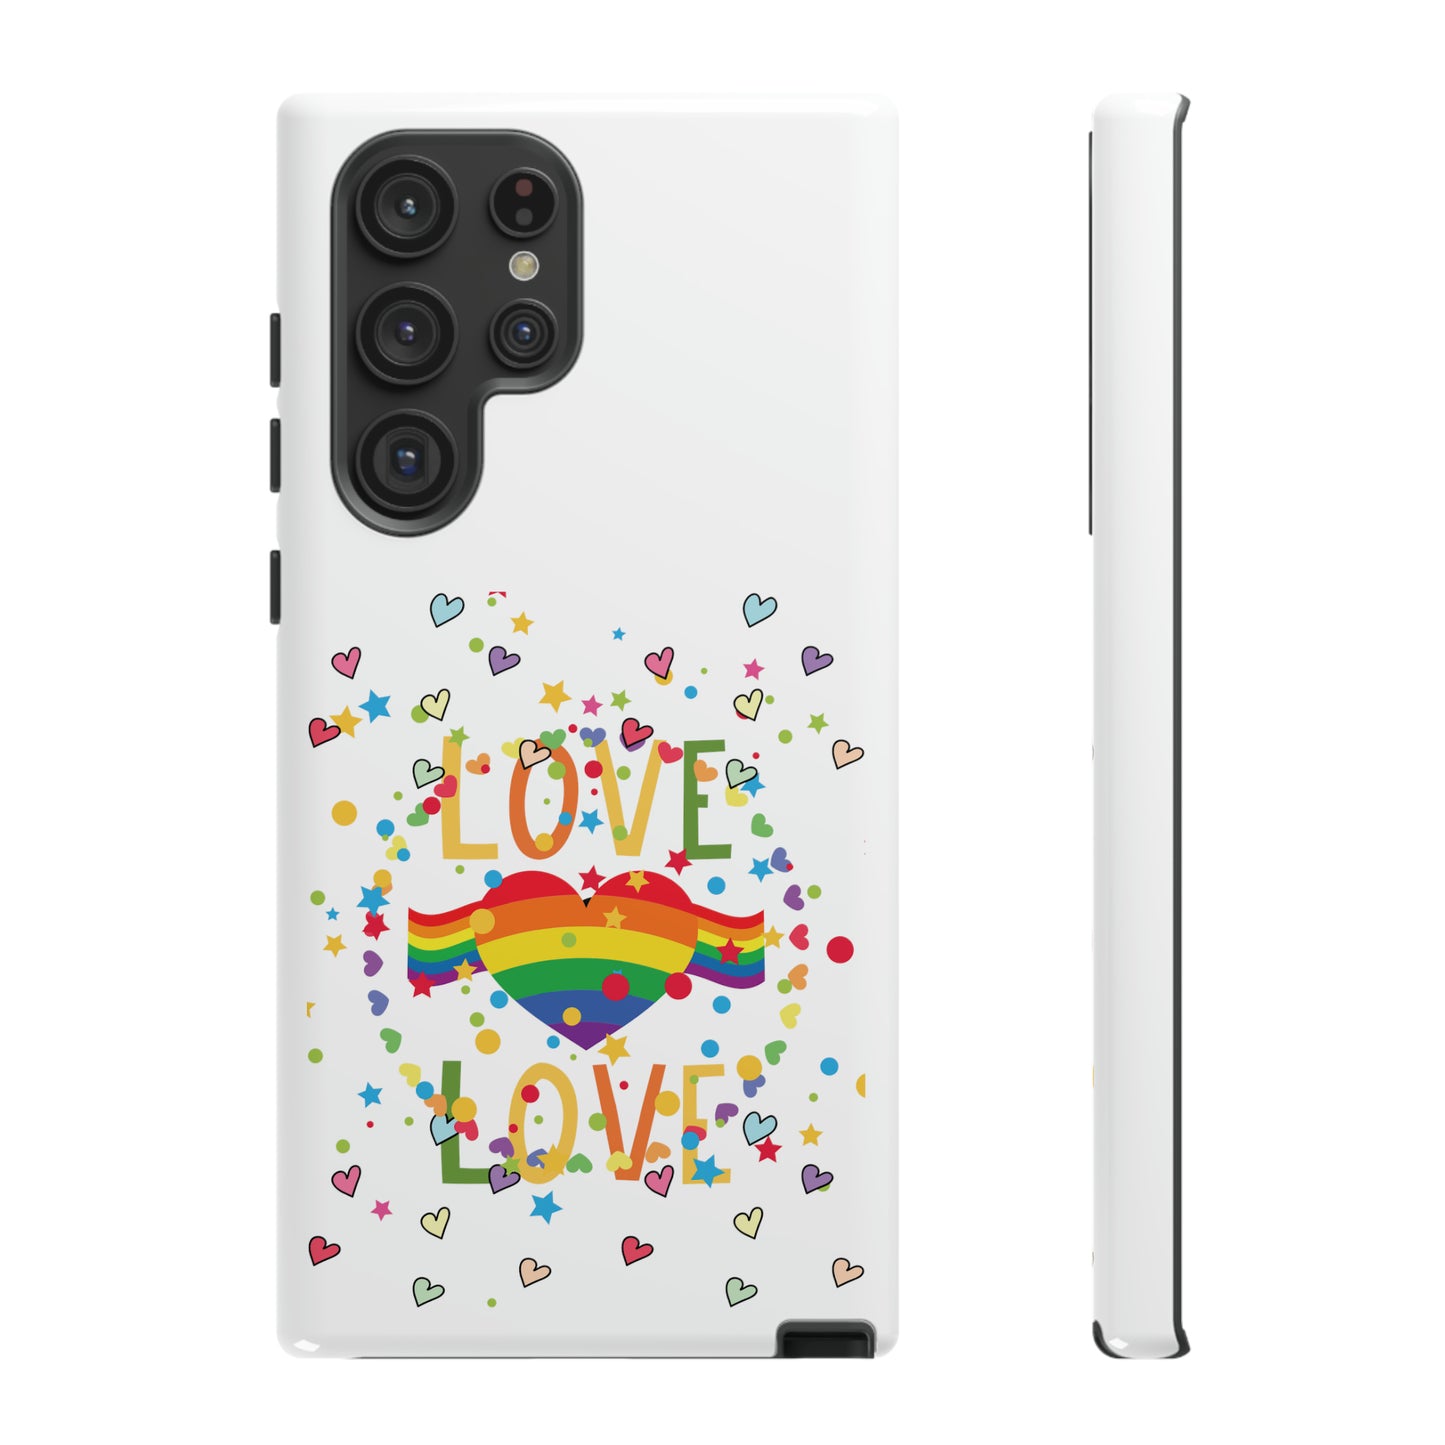 Love Love Tough Galaxy 7 Through S23 Phone Case